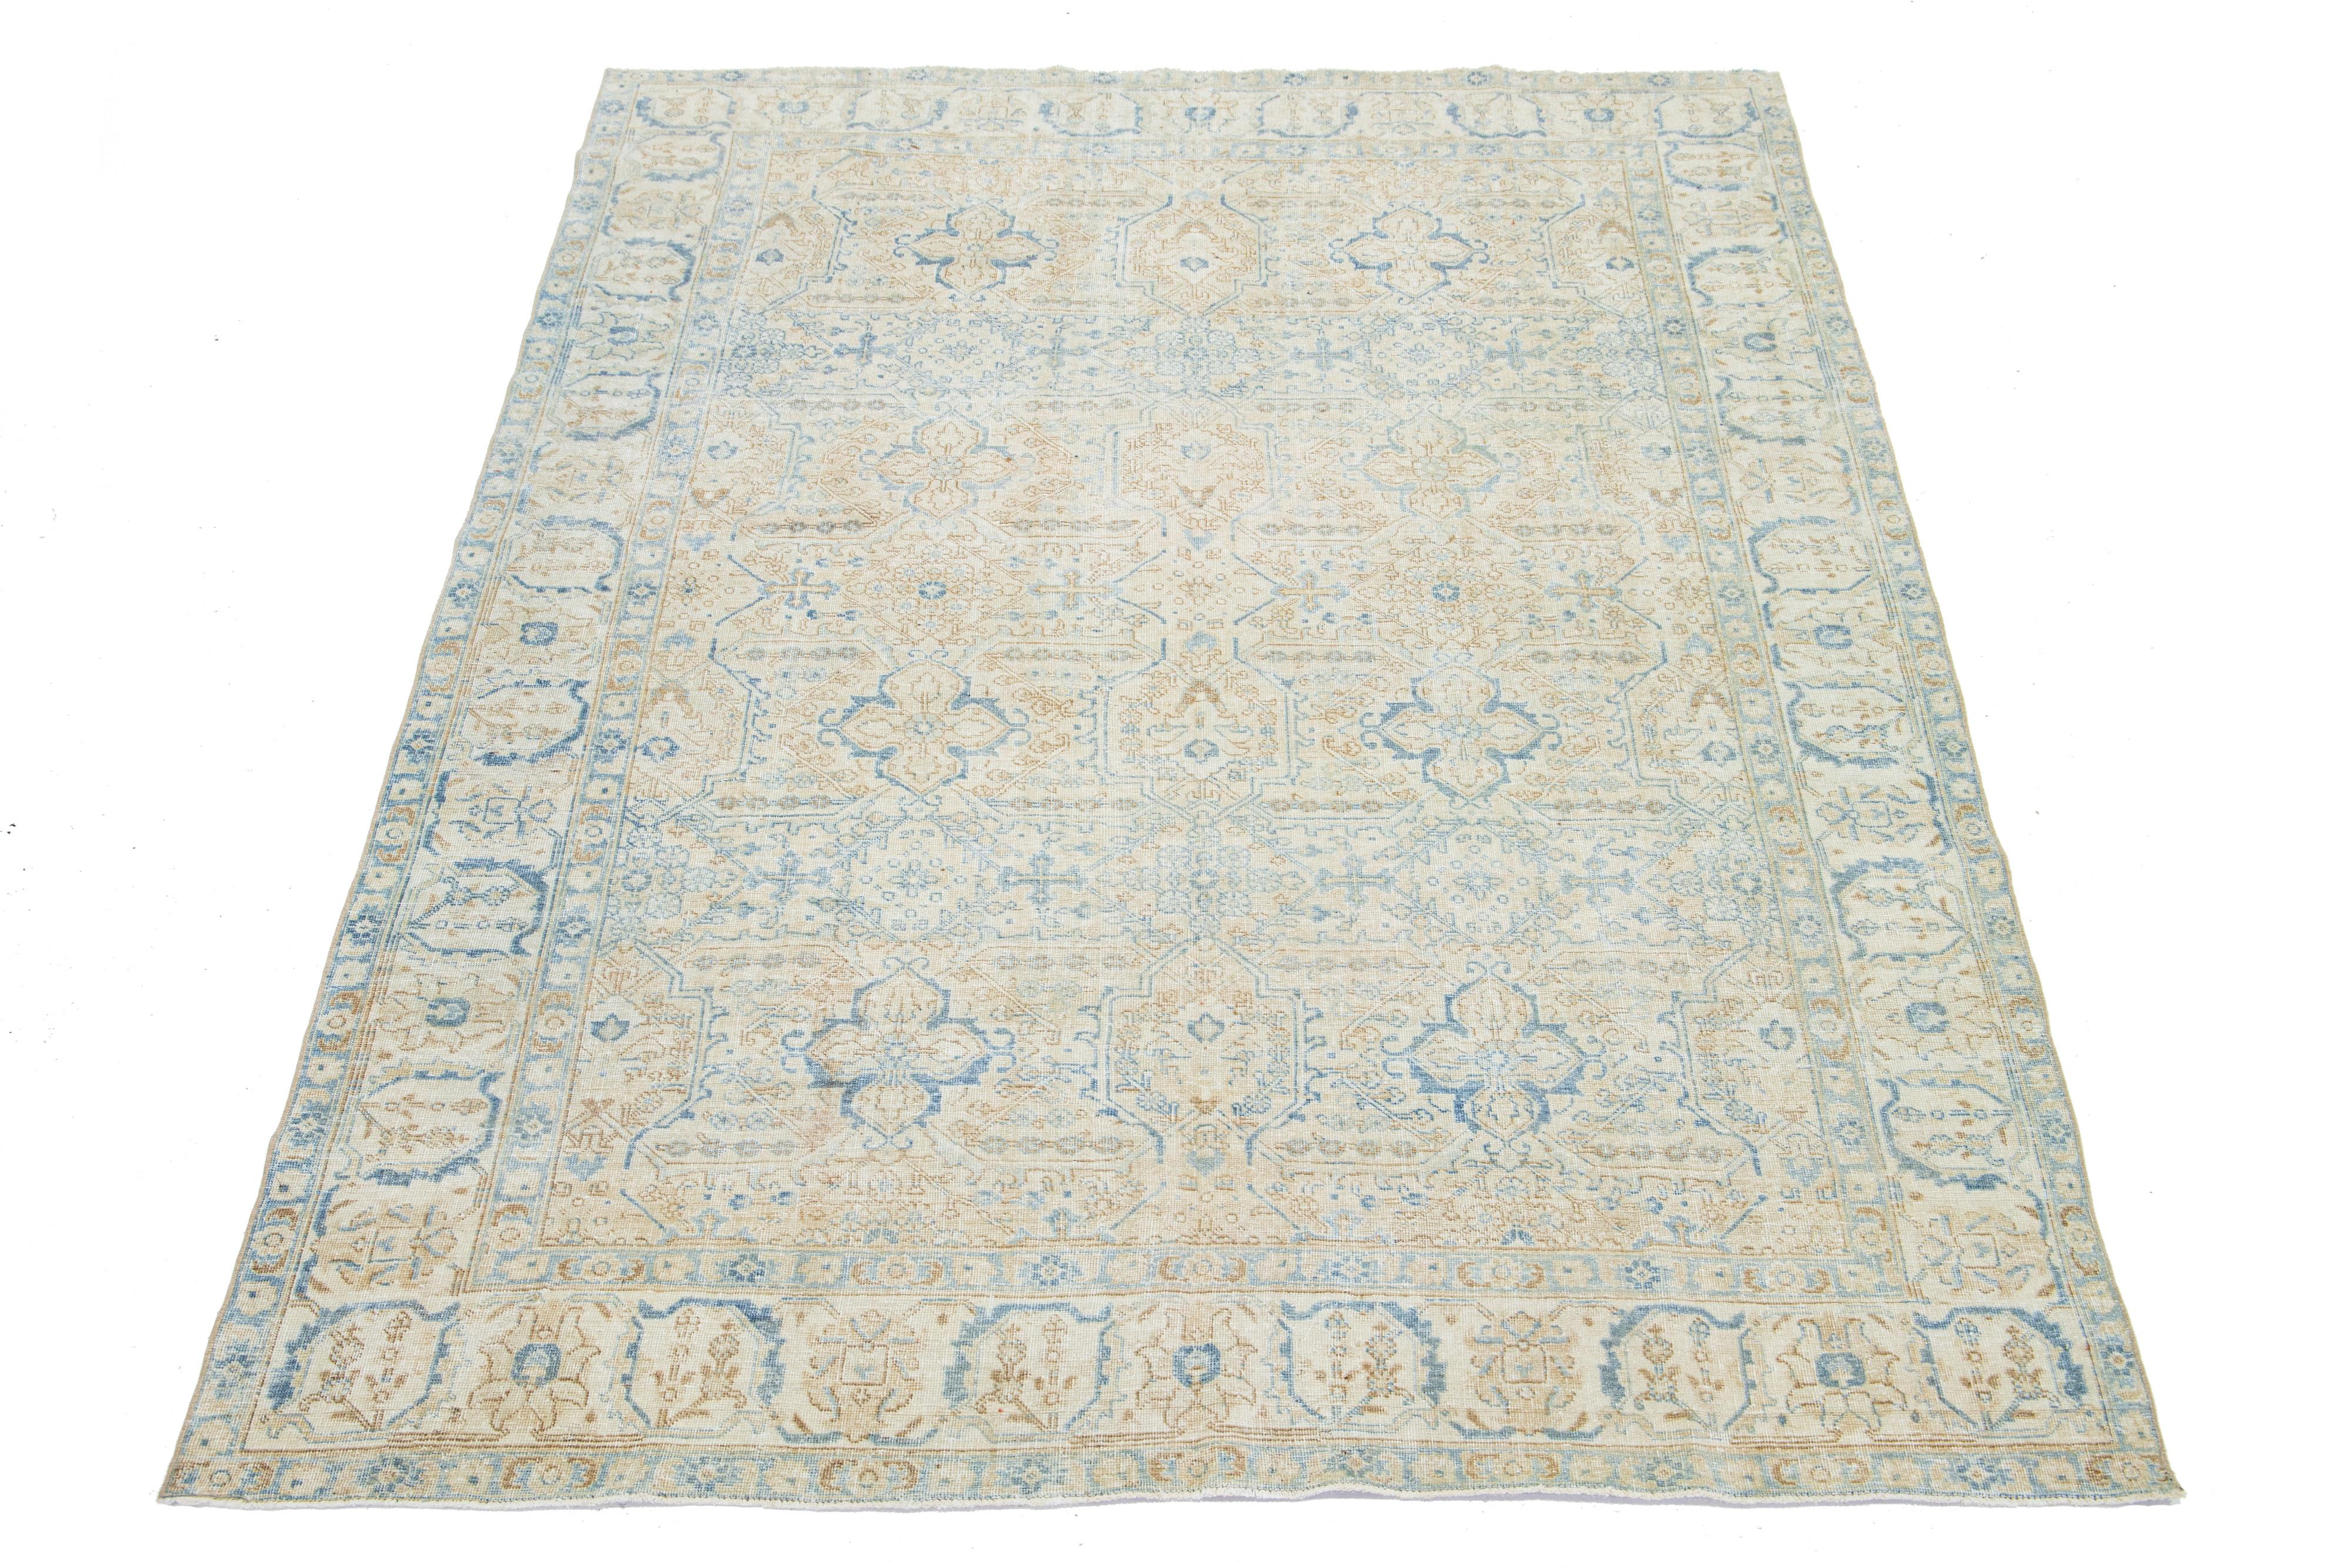 Dieser antike persische Heriz-Teppich ist aus handgeknüpfter Wolle gefertigt. Das beigefarbene Feld besticht durch ein Allover-Muster, das mit Blau- und Brauntönen verziert ist.

Dieser Teppich misst 6'6